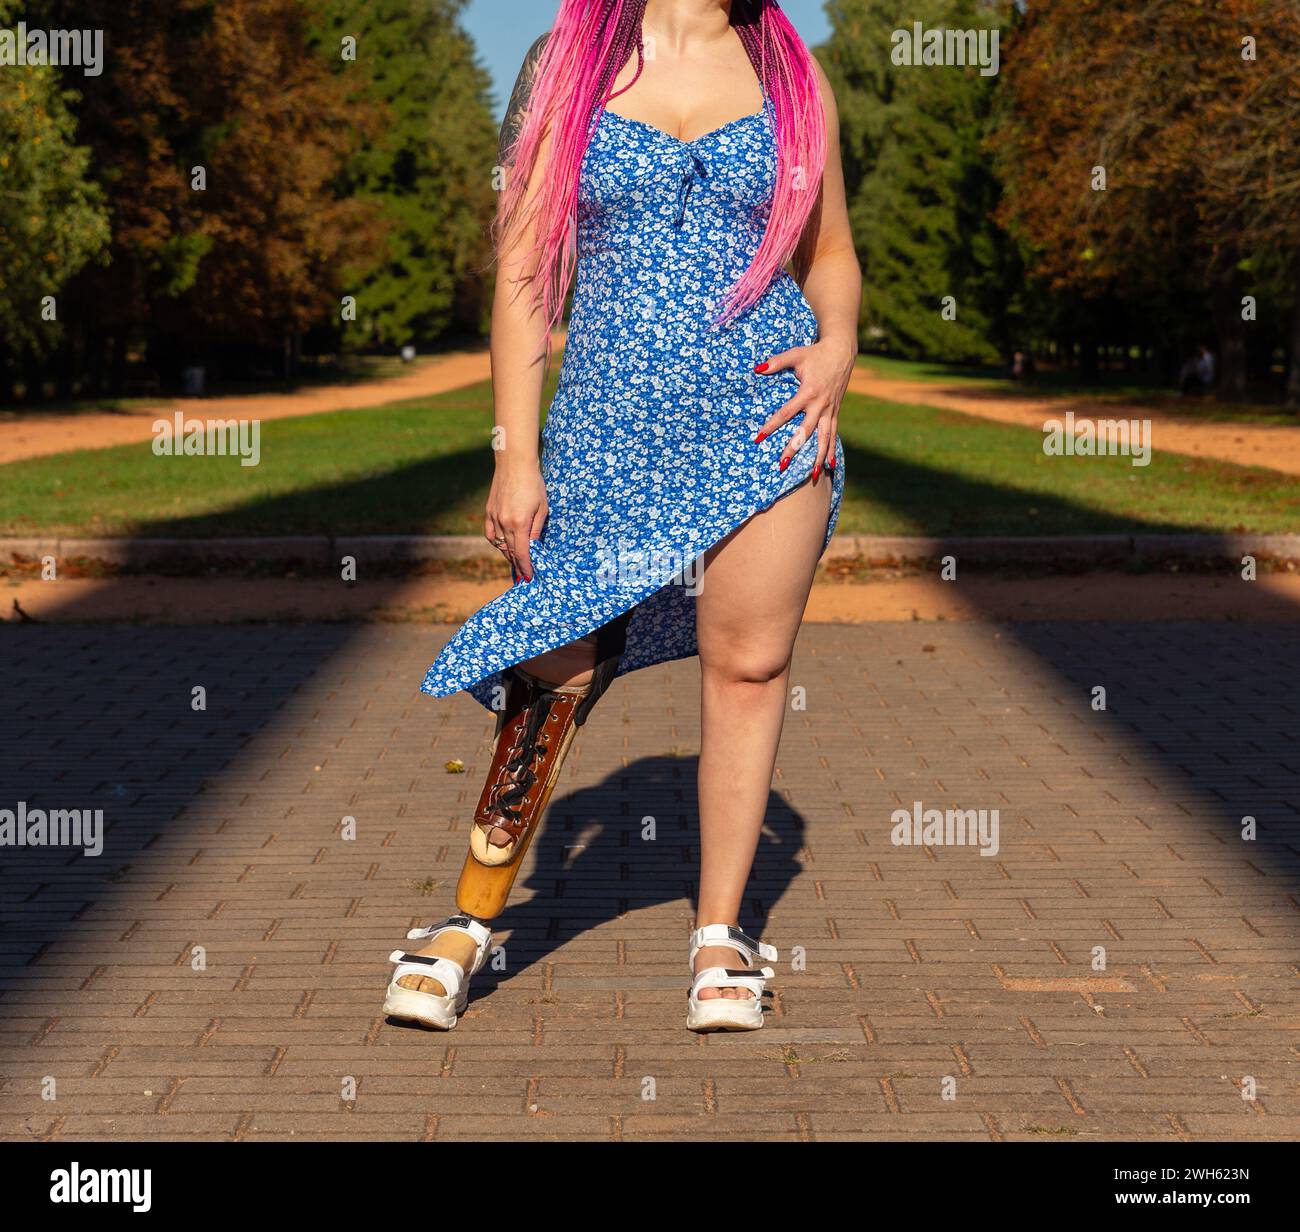 Schöne junge Frau Beinamputierte in einem Kleid, die am sonnigen Tag im Park spaziert. Das Leben geht weiter, egal was passiert. Stockfoto